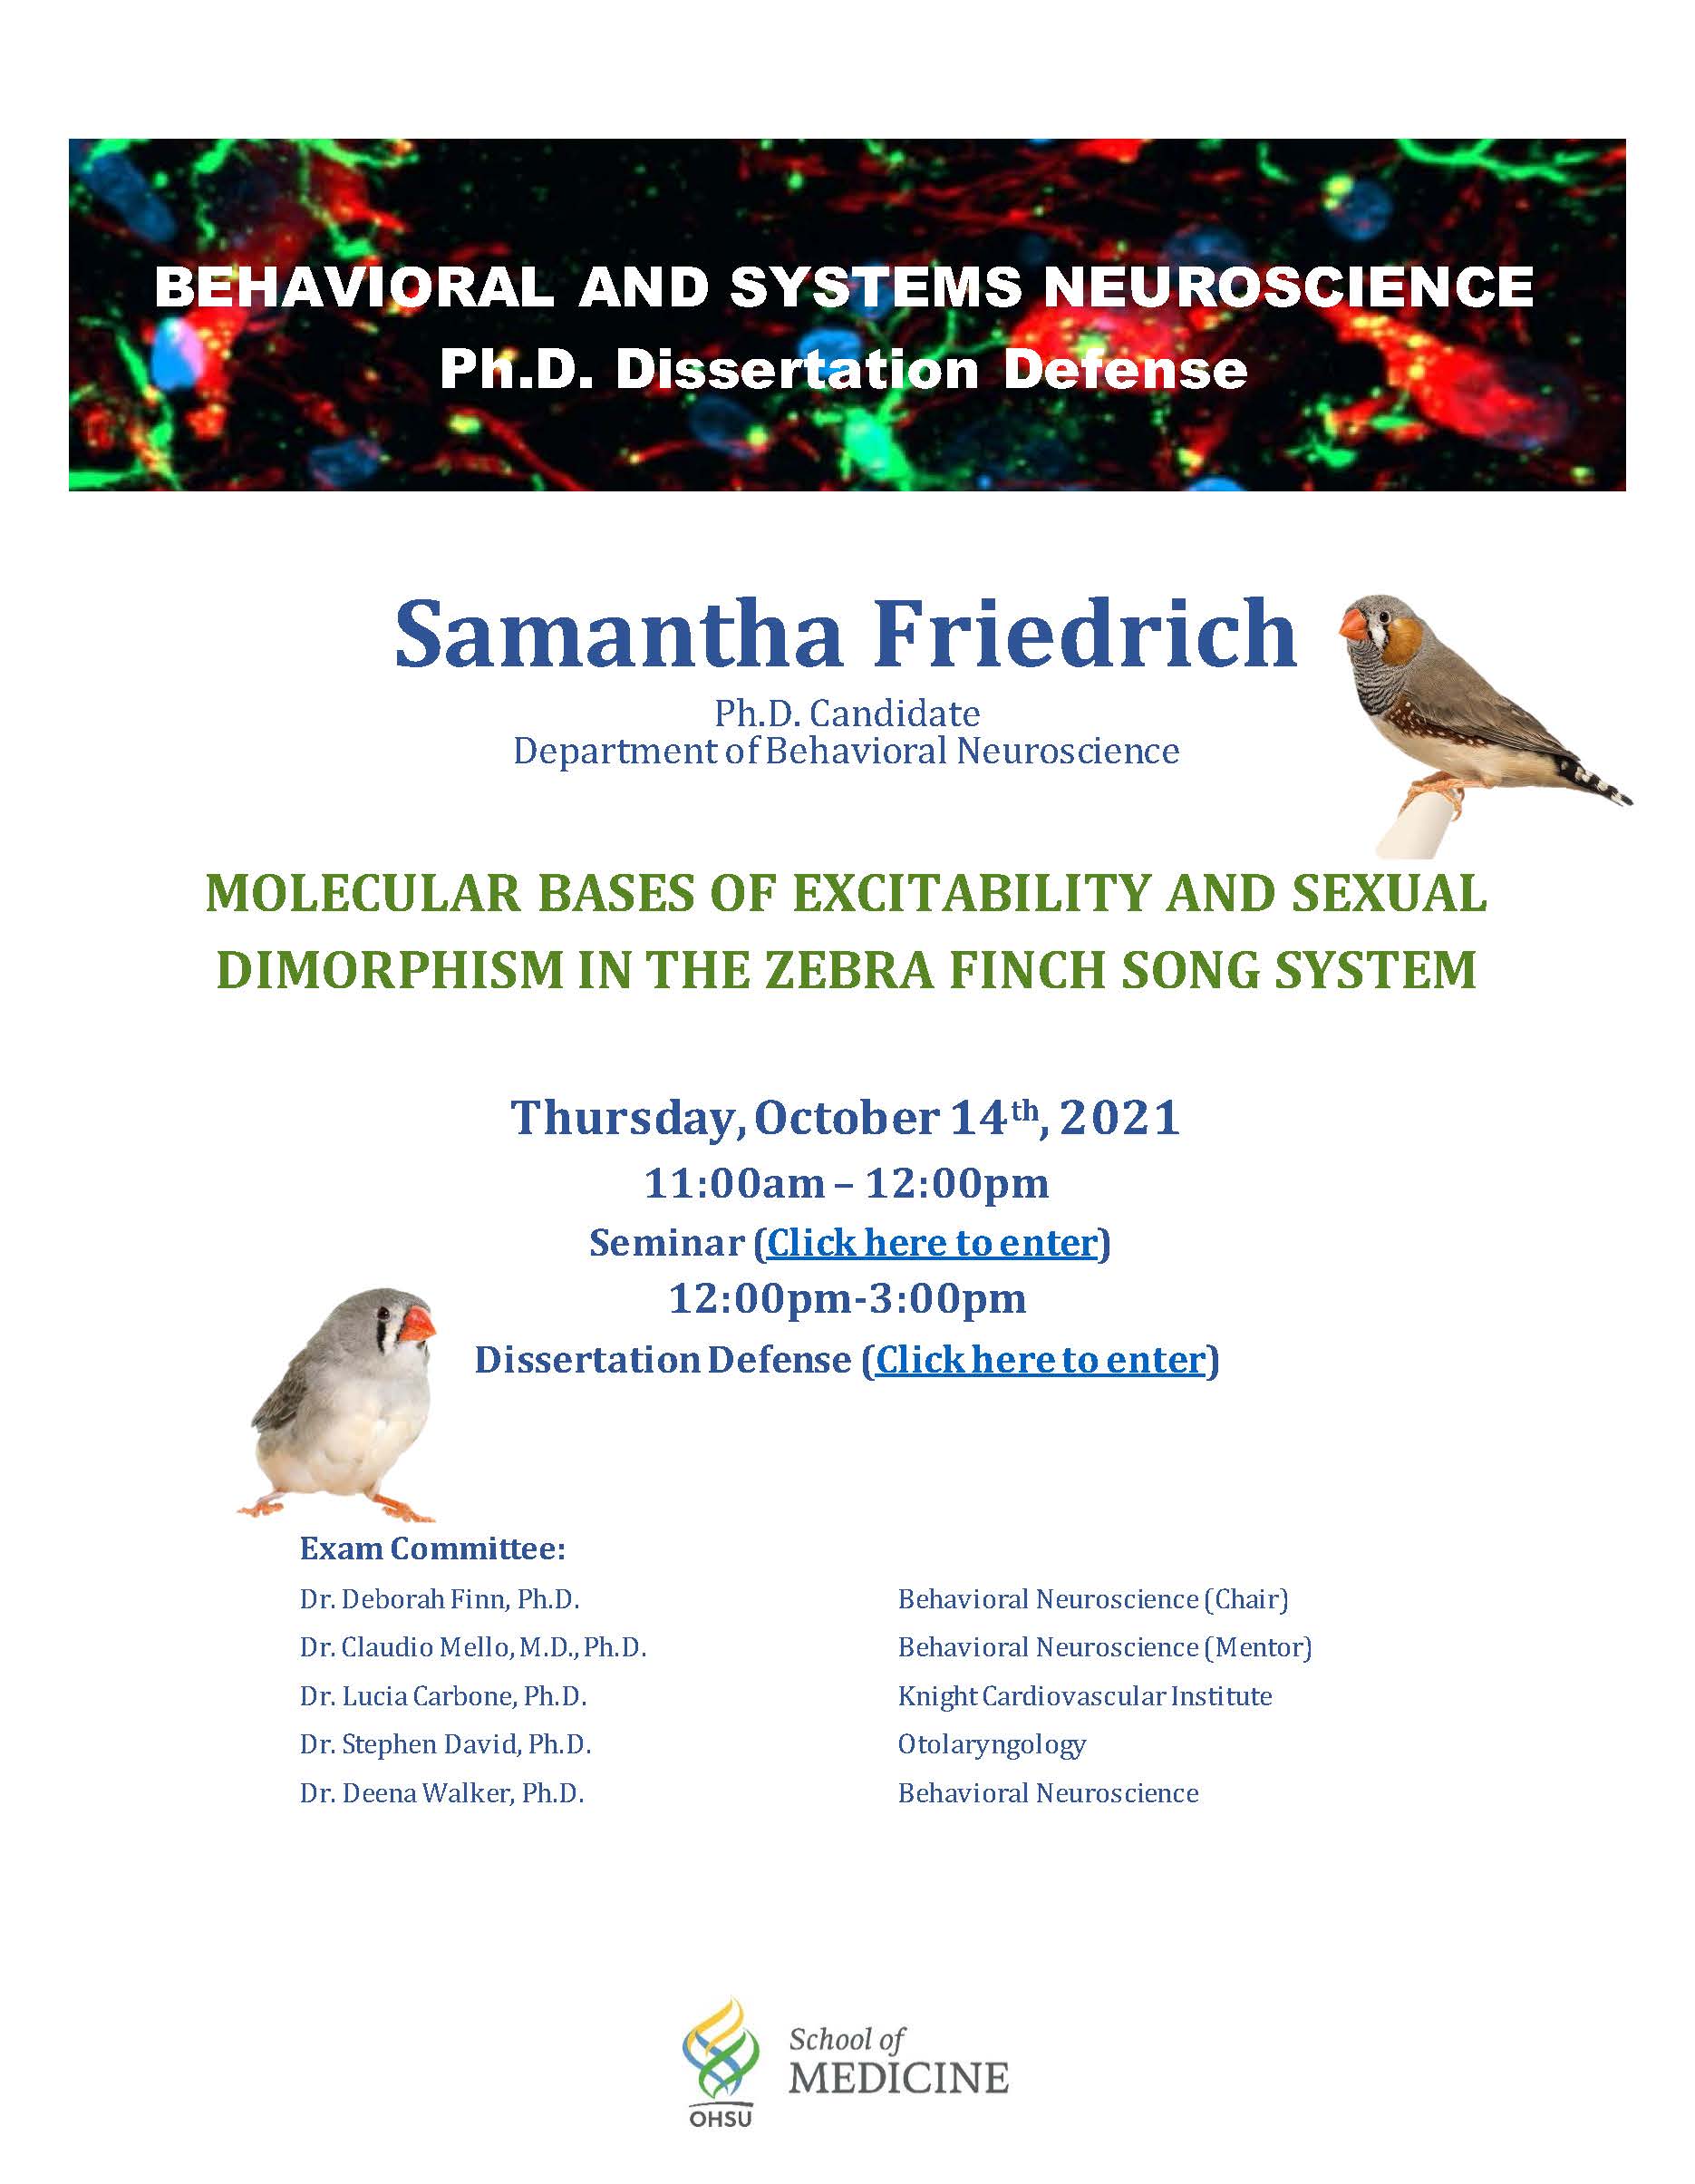 Samantha Friedrich Ph.D. Dissertation Defense Flyer